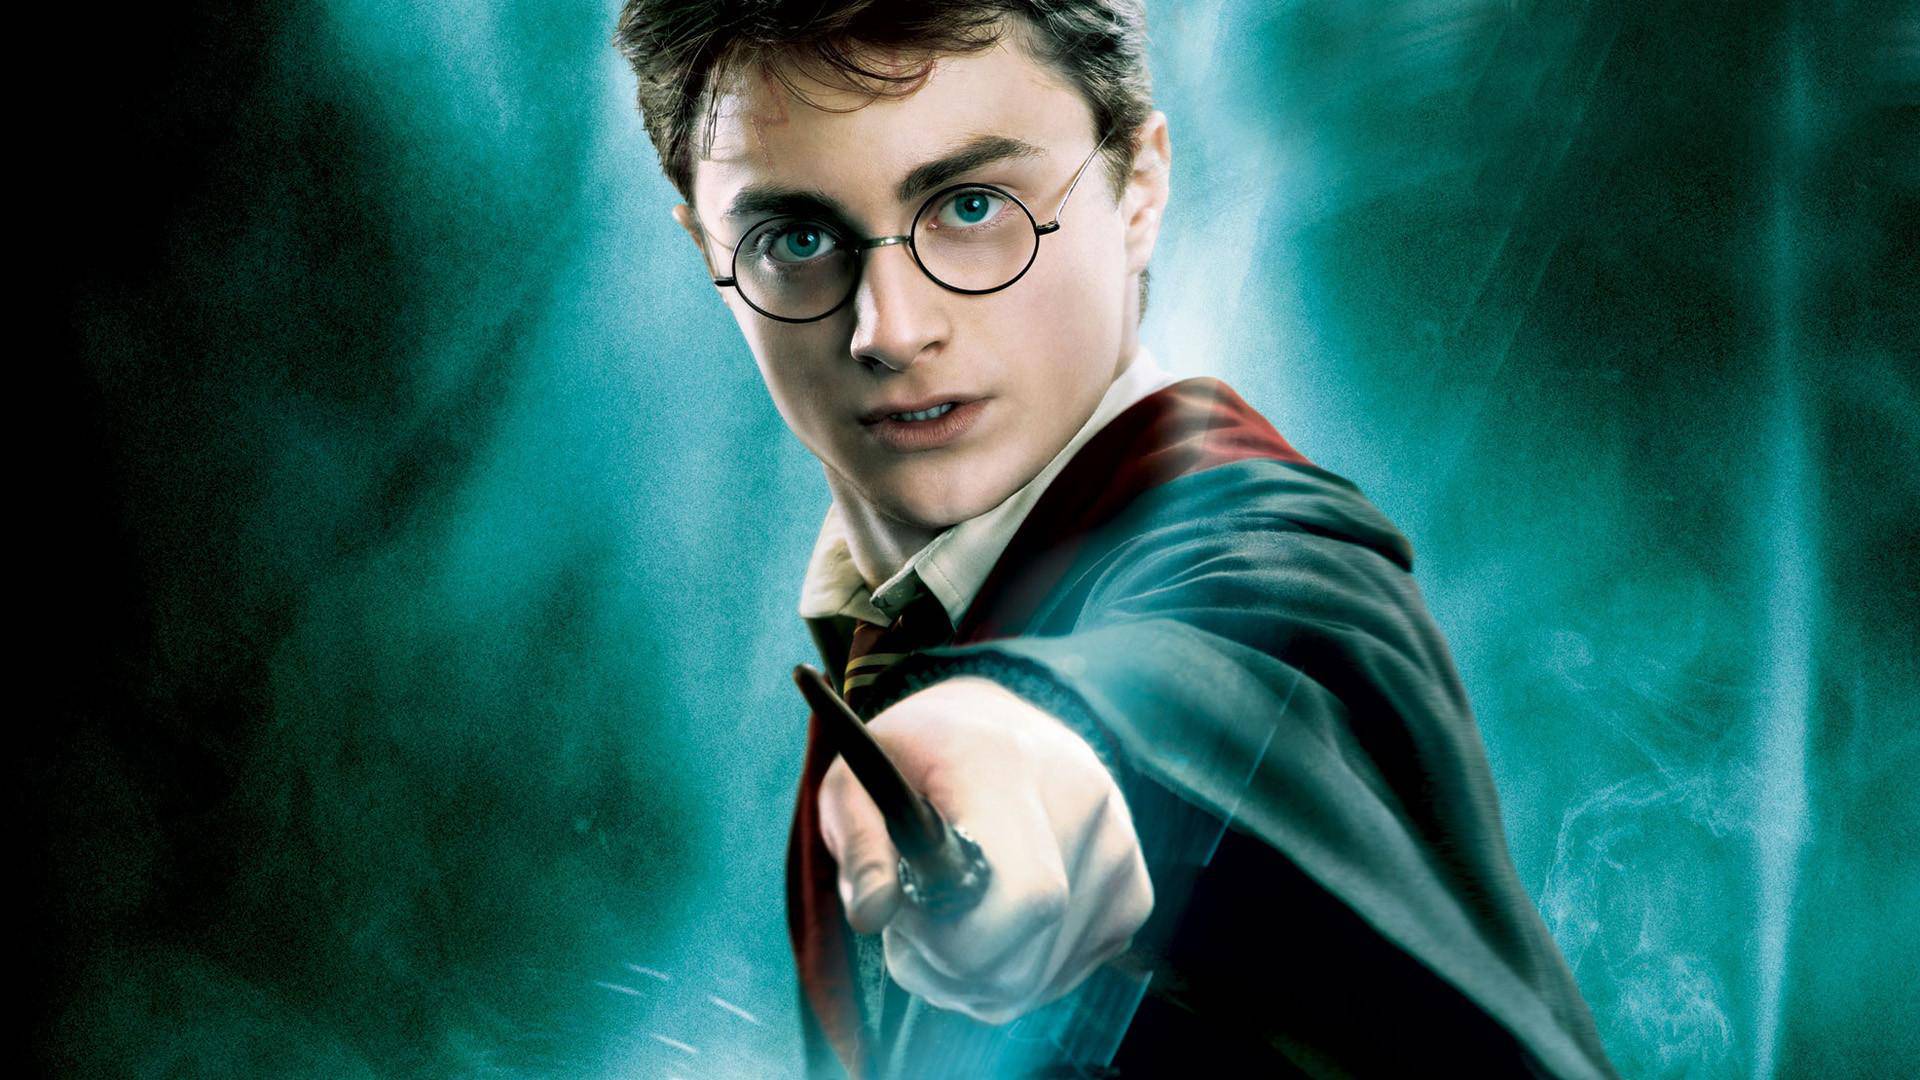 Broadway: 'Harry Potter' će biti najskuplja predstava ikad